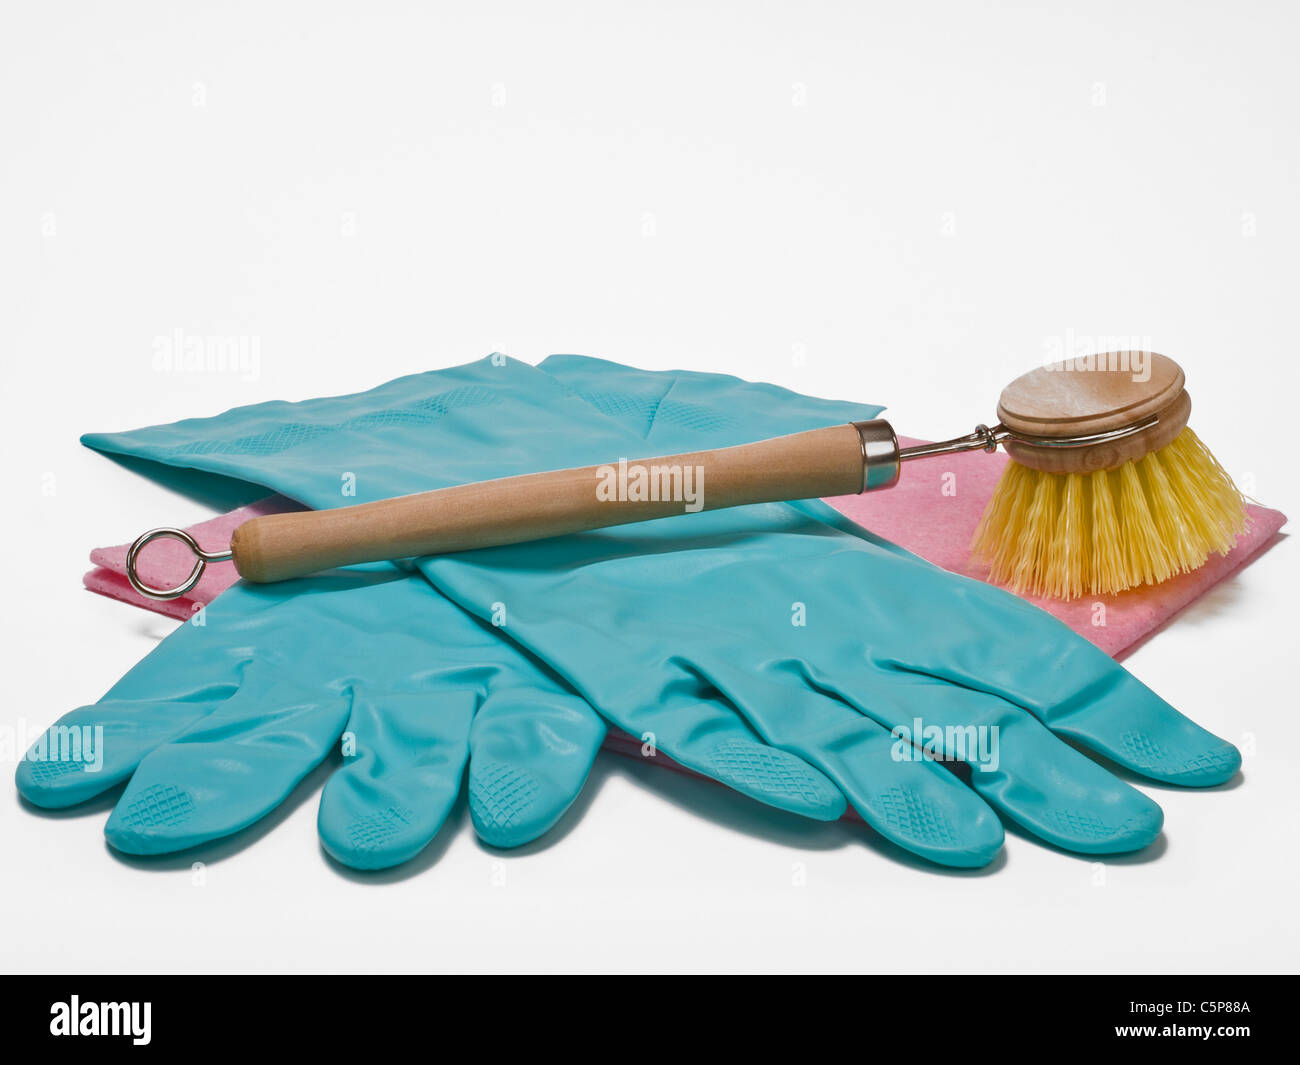 Gummihandschuhe und eine Haushaltsspülbürste liegen auf einem Lappen | rubber gloves and a washing-up brush on a cloth Stock Photo